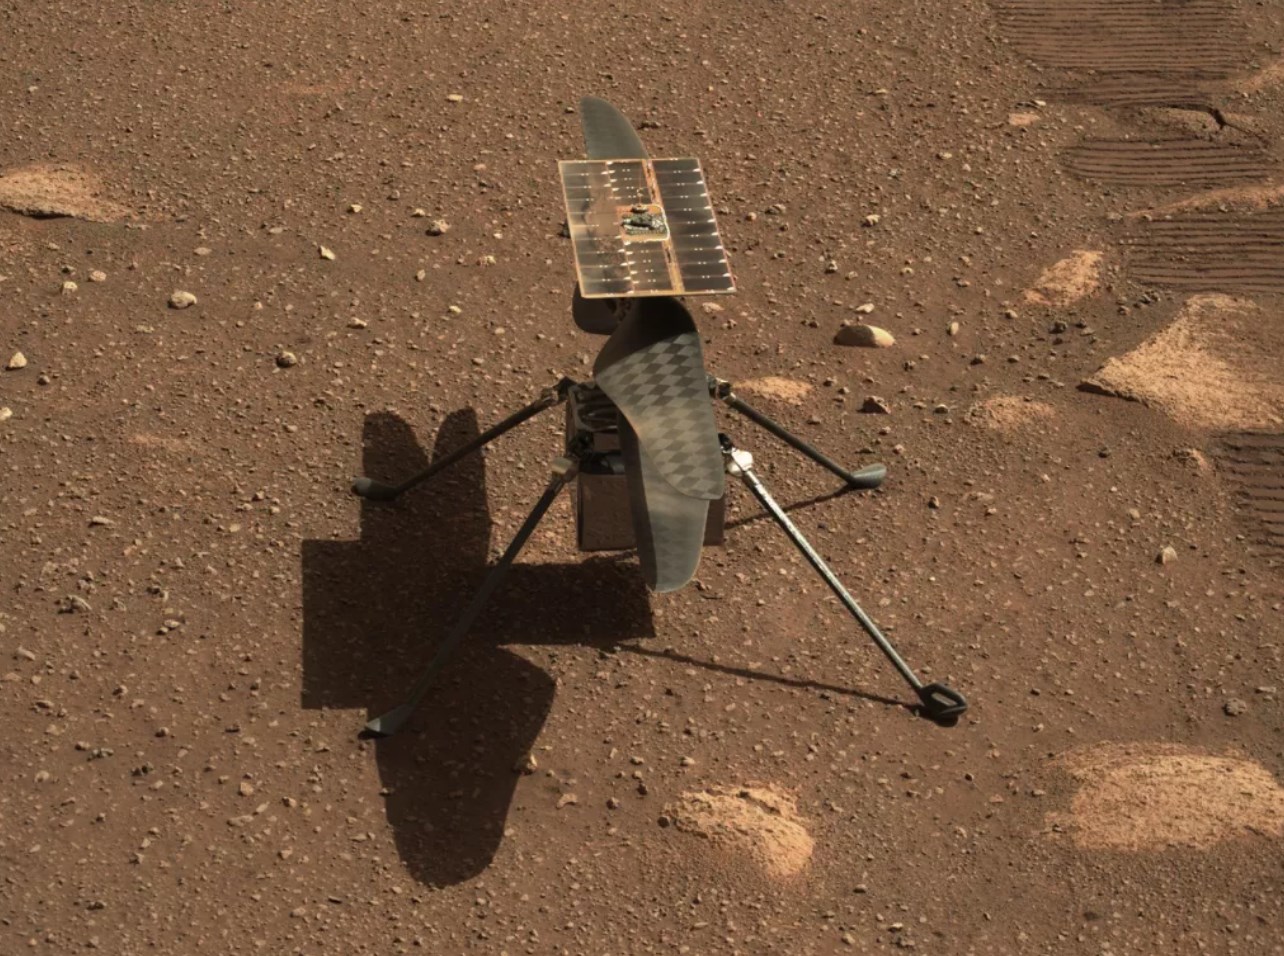 Mars helikopterinde yazılım sorunu çıktı: Uçuş haftaya kaldı